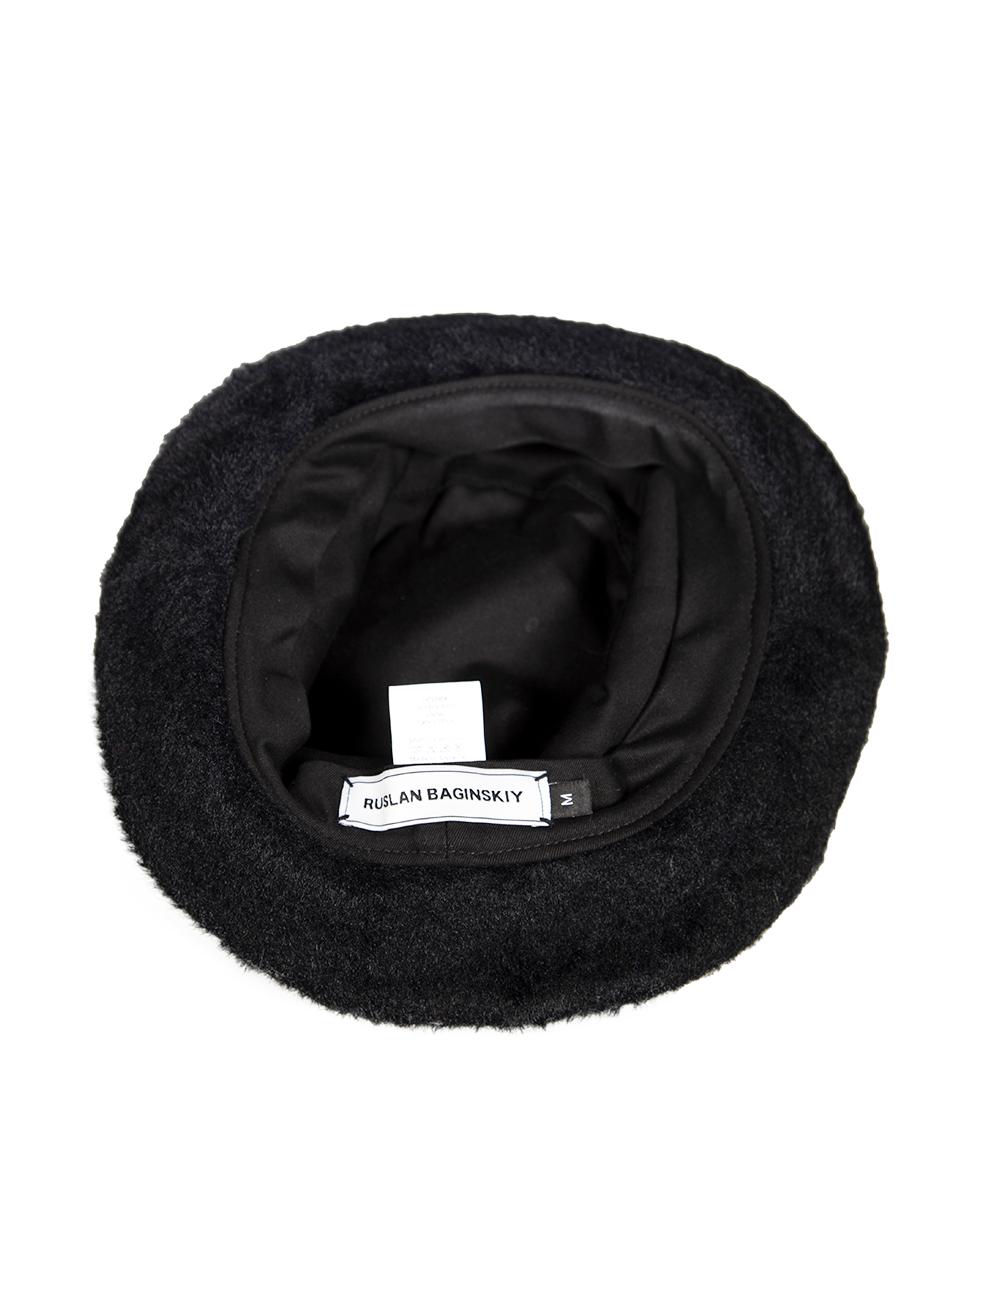 Ruslan Baginskiy - Chapeau baquet noir Pour femmes en vente